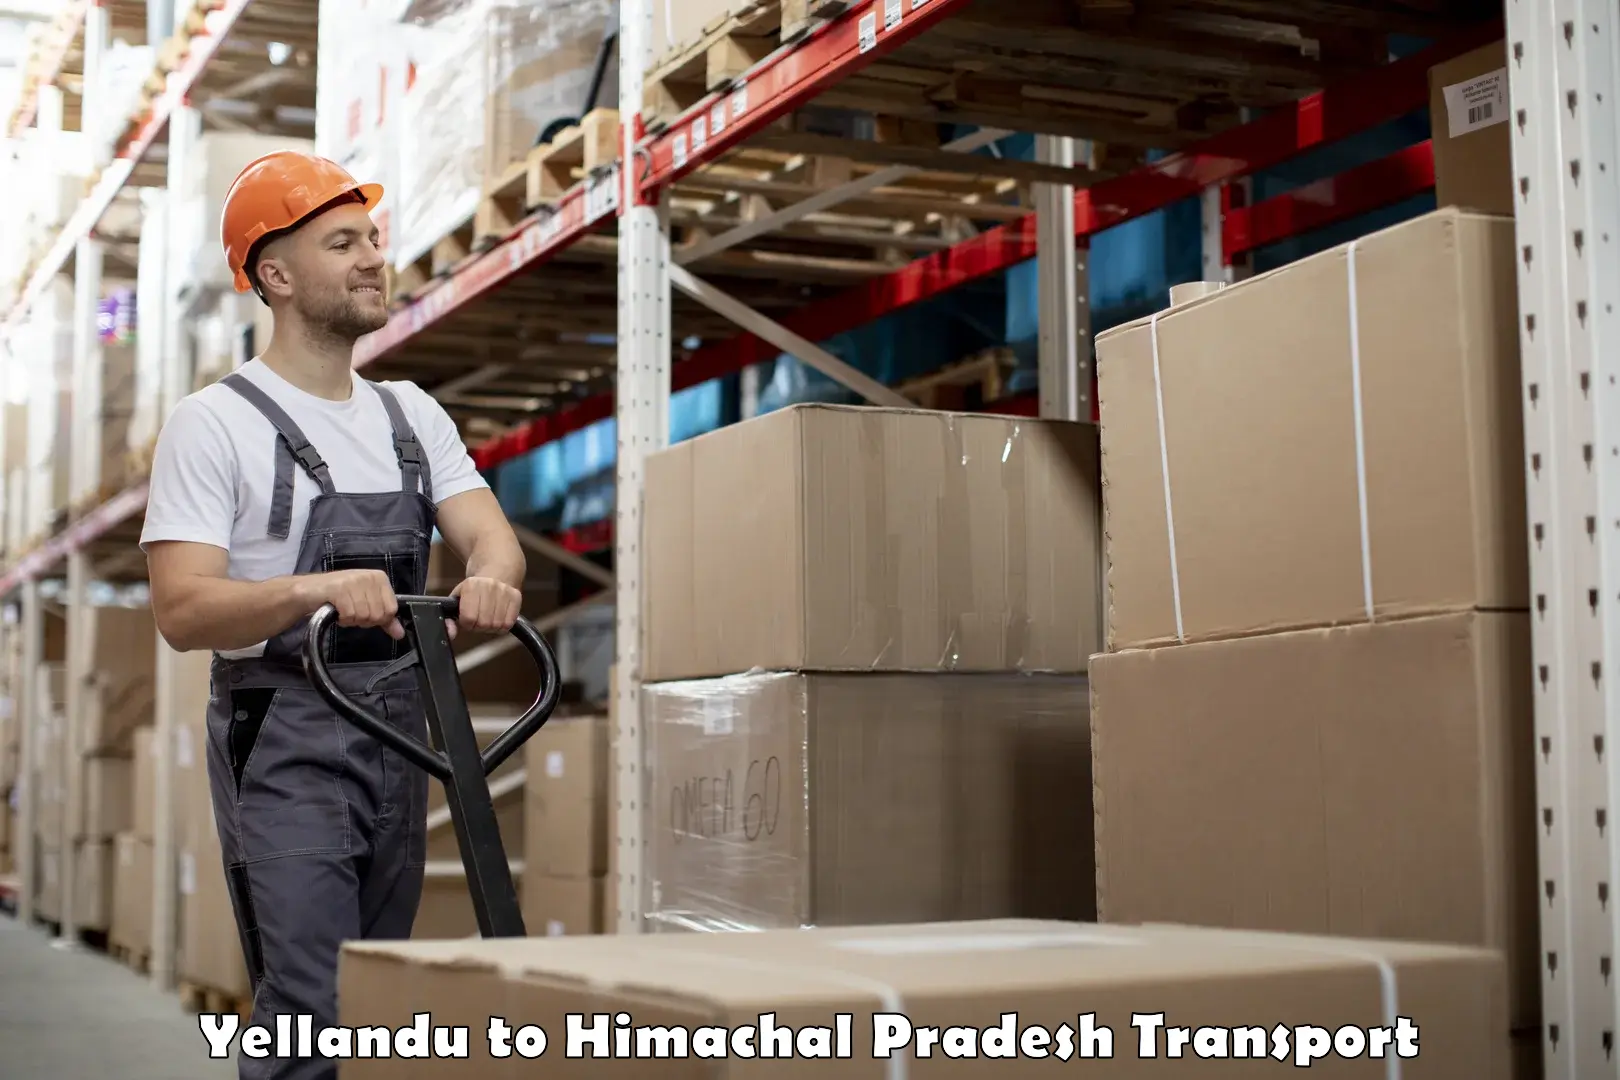 Shipping partner Yellandu to Kachhera